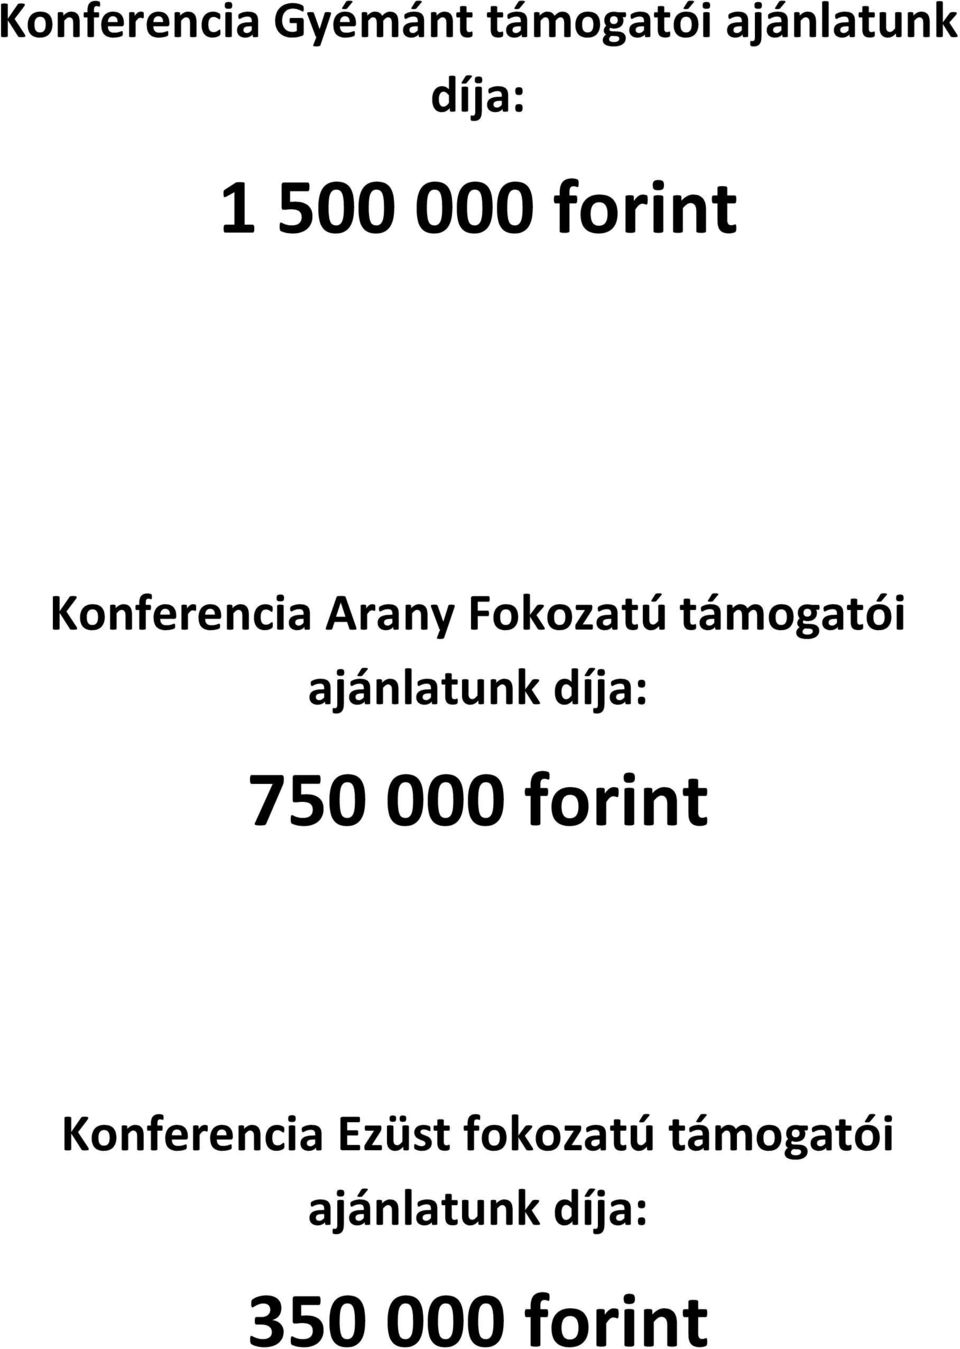 támogatói ajánlatunk díja: 750 000 forint